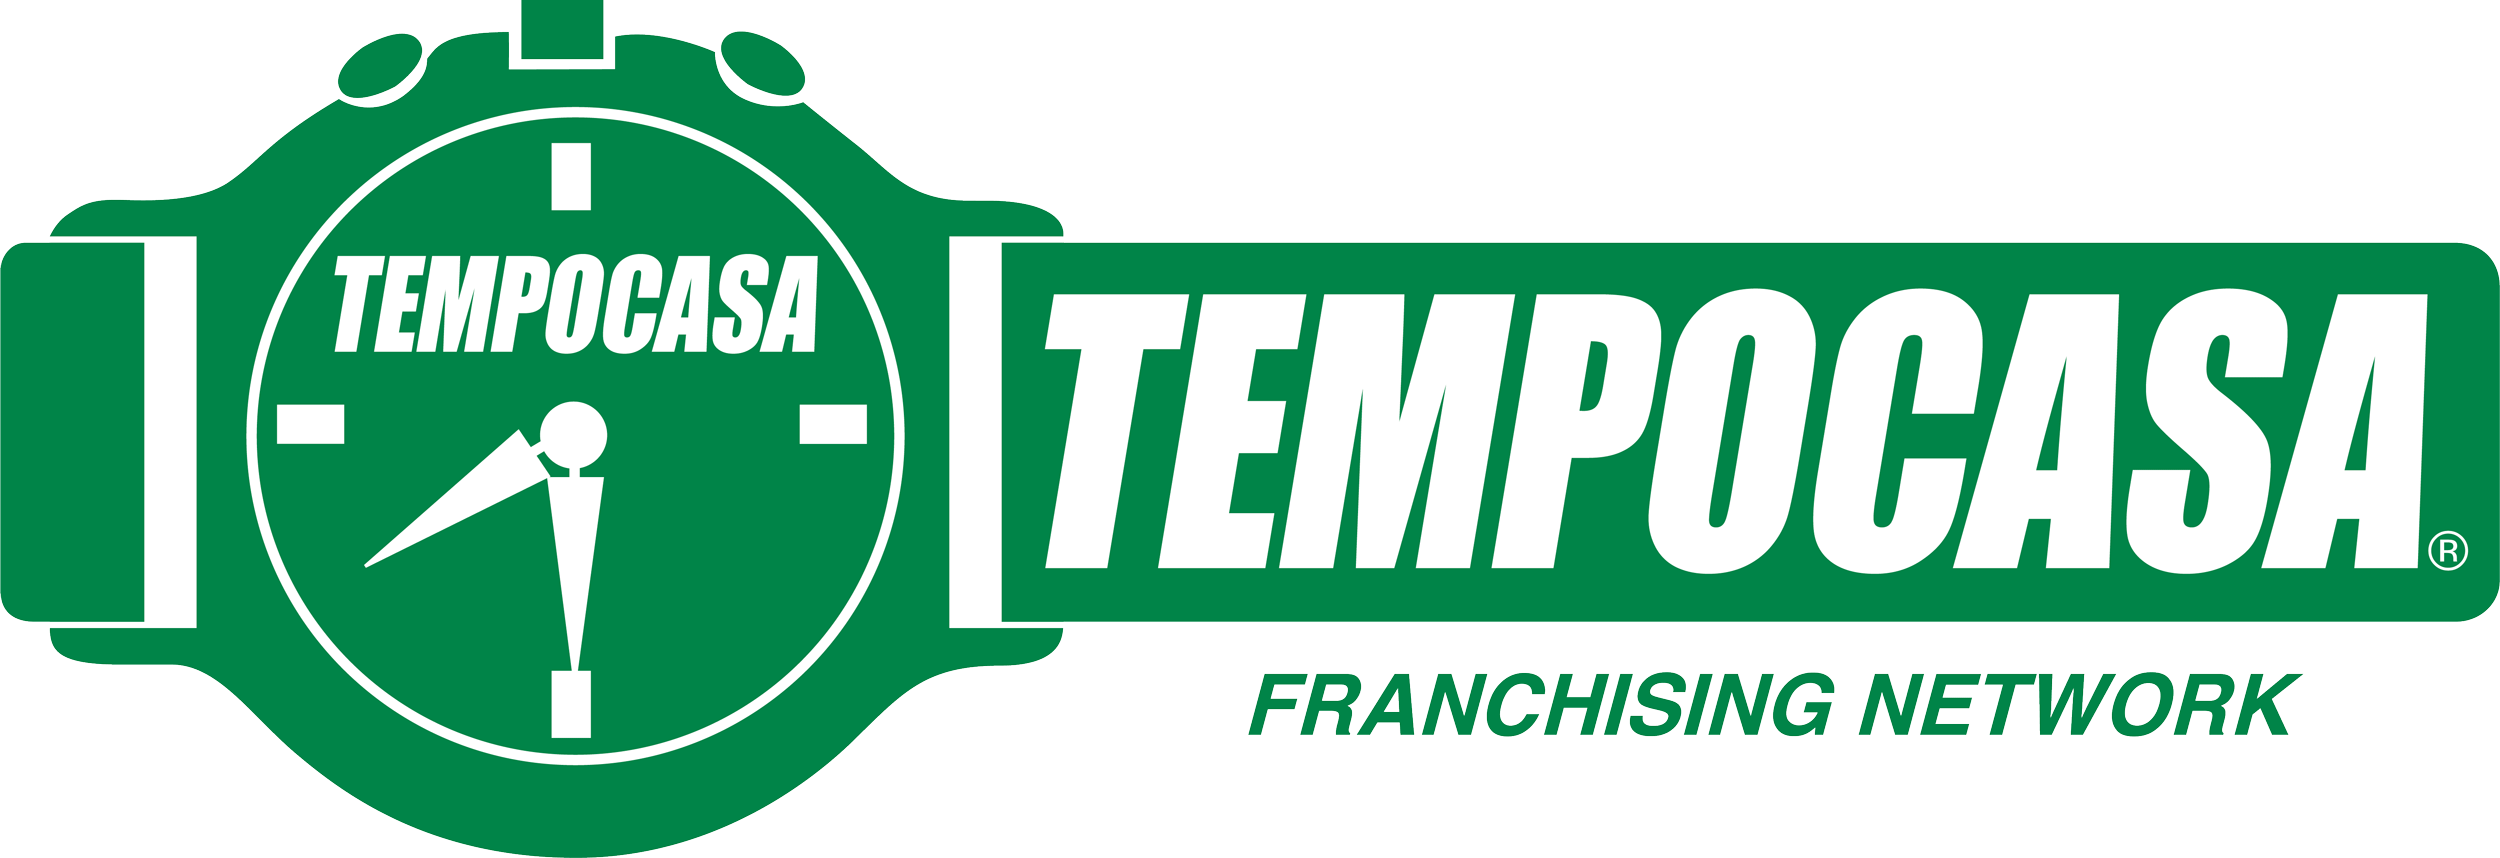 Asti - Tempocasa